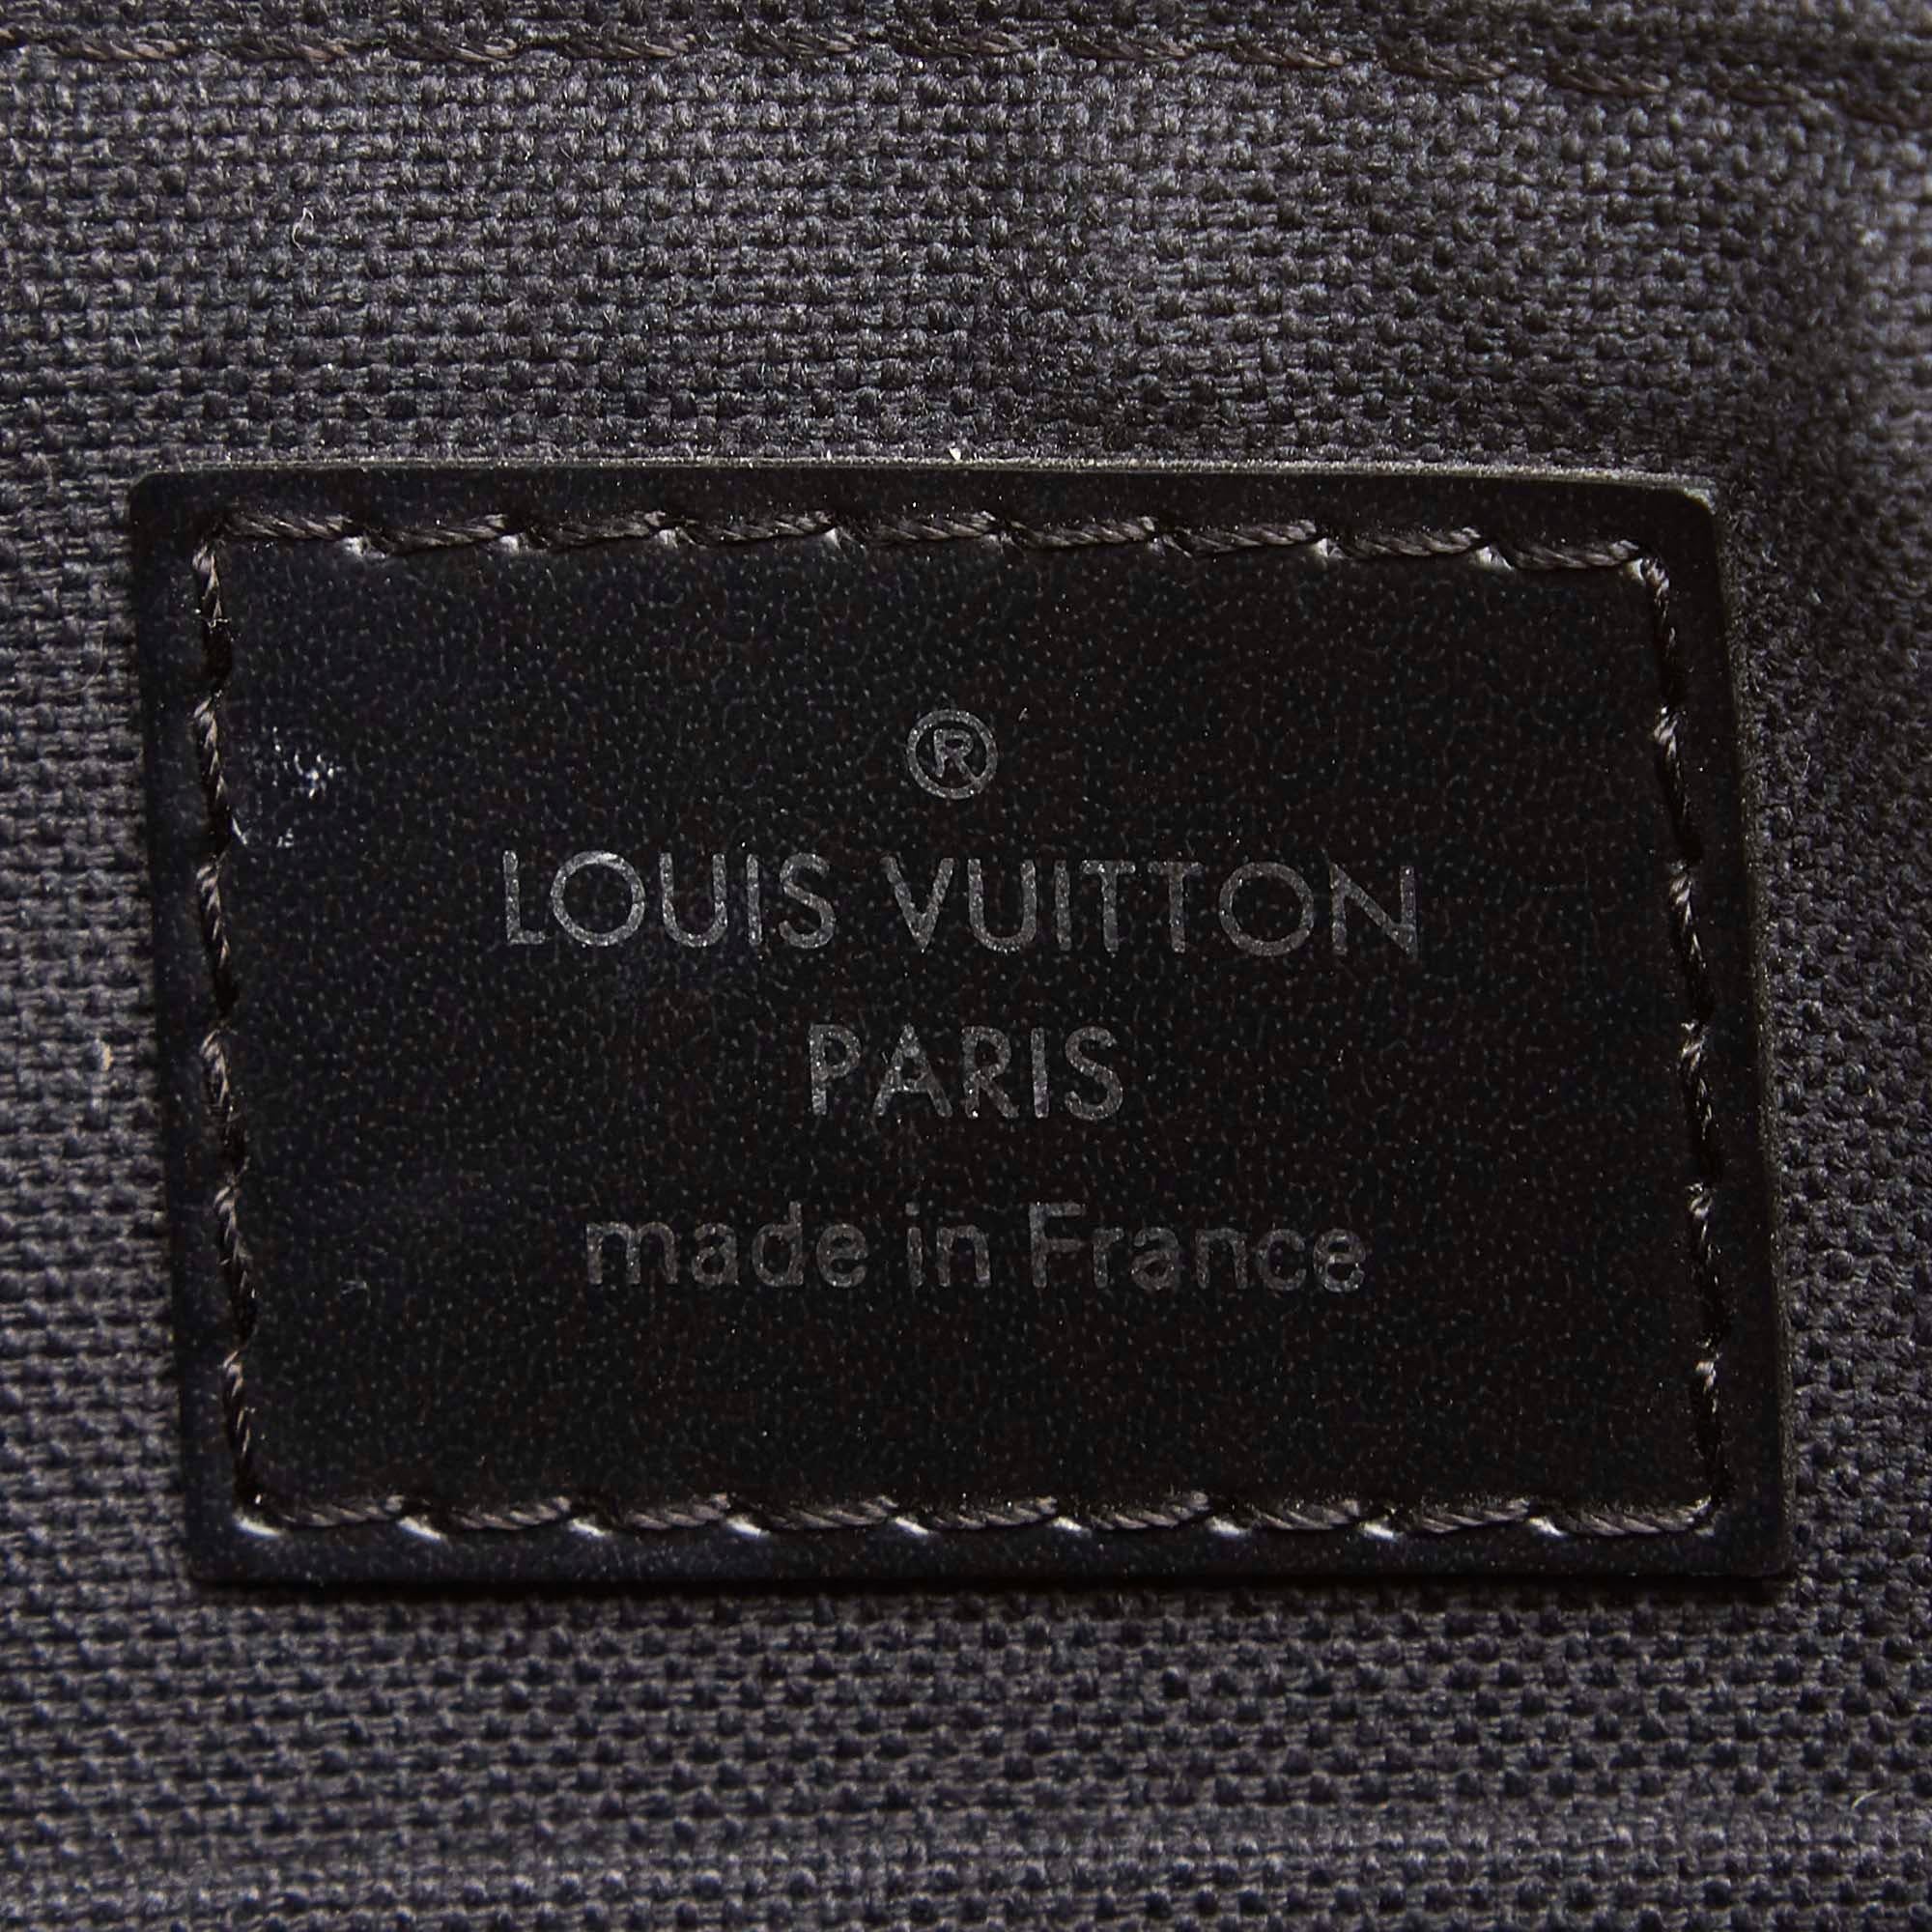 Vintage Authentic Louis Vuitton Black Graphite Mick PM France SMALL  For Sale 2